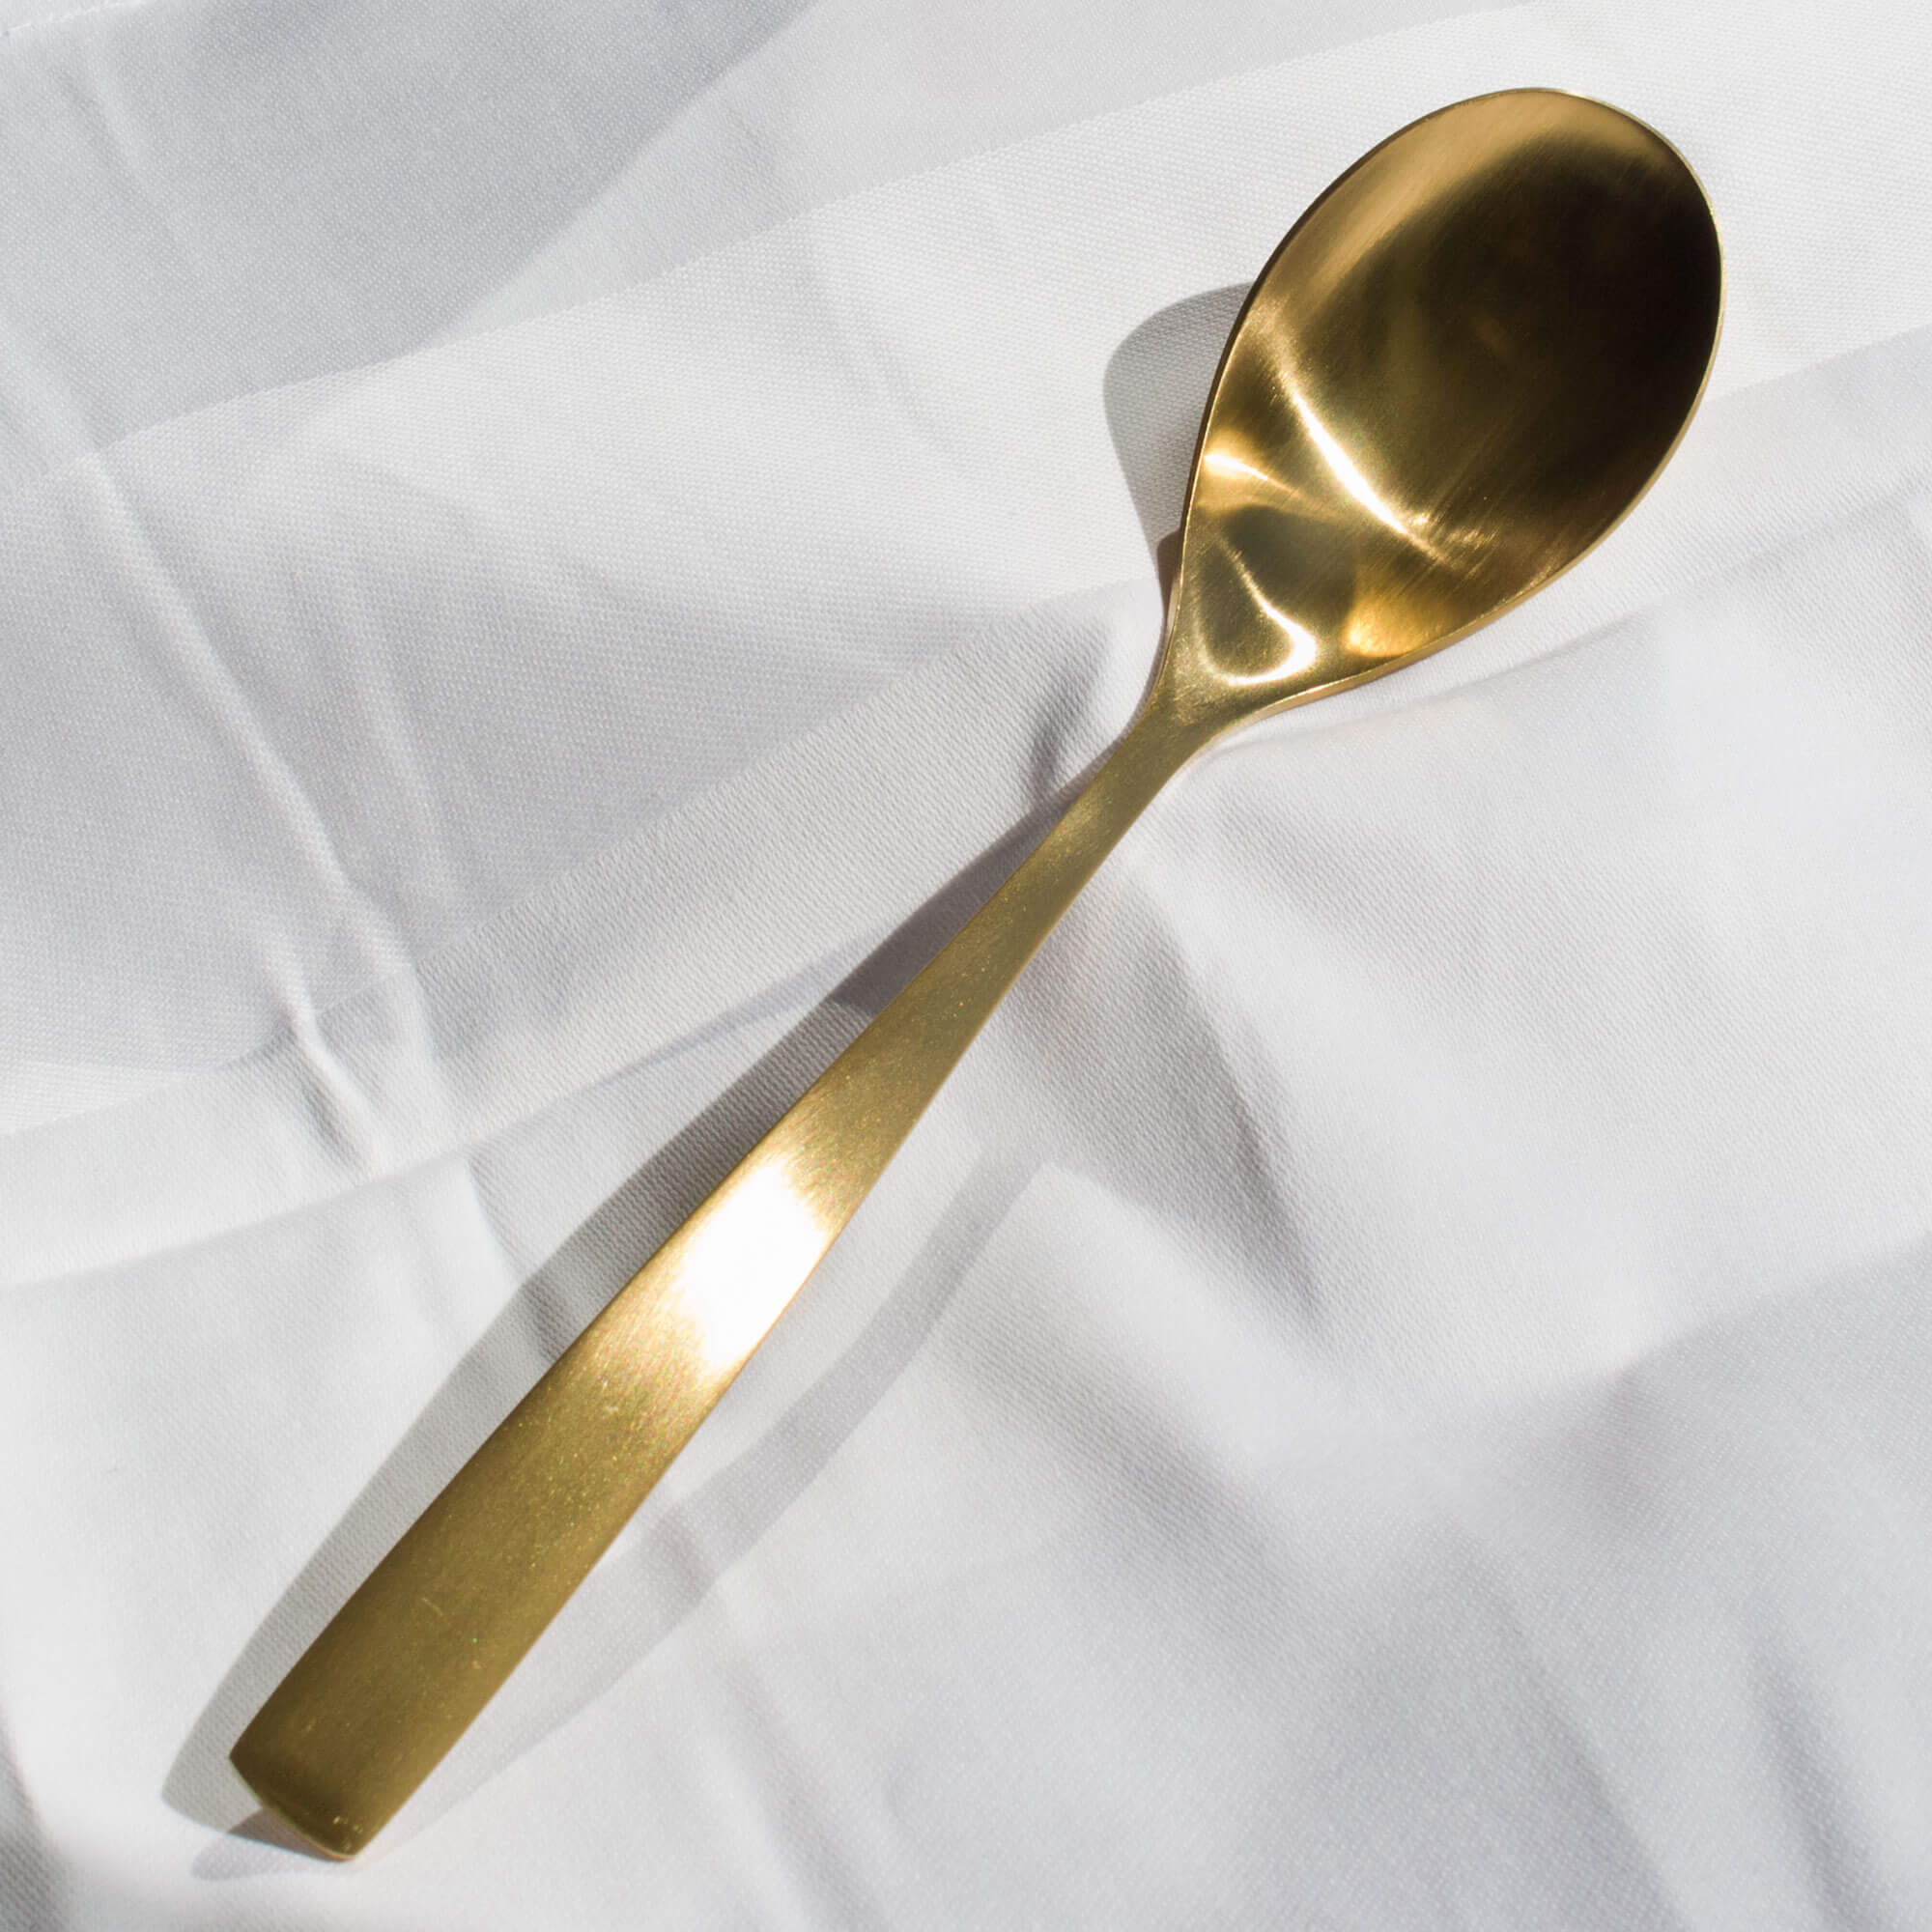 Table spoon Comas BCN - gold-colored (12 pcs.)